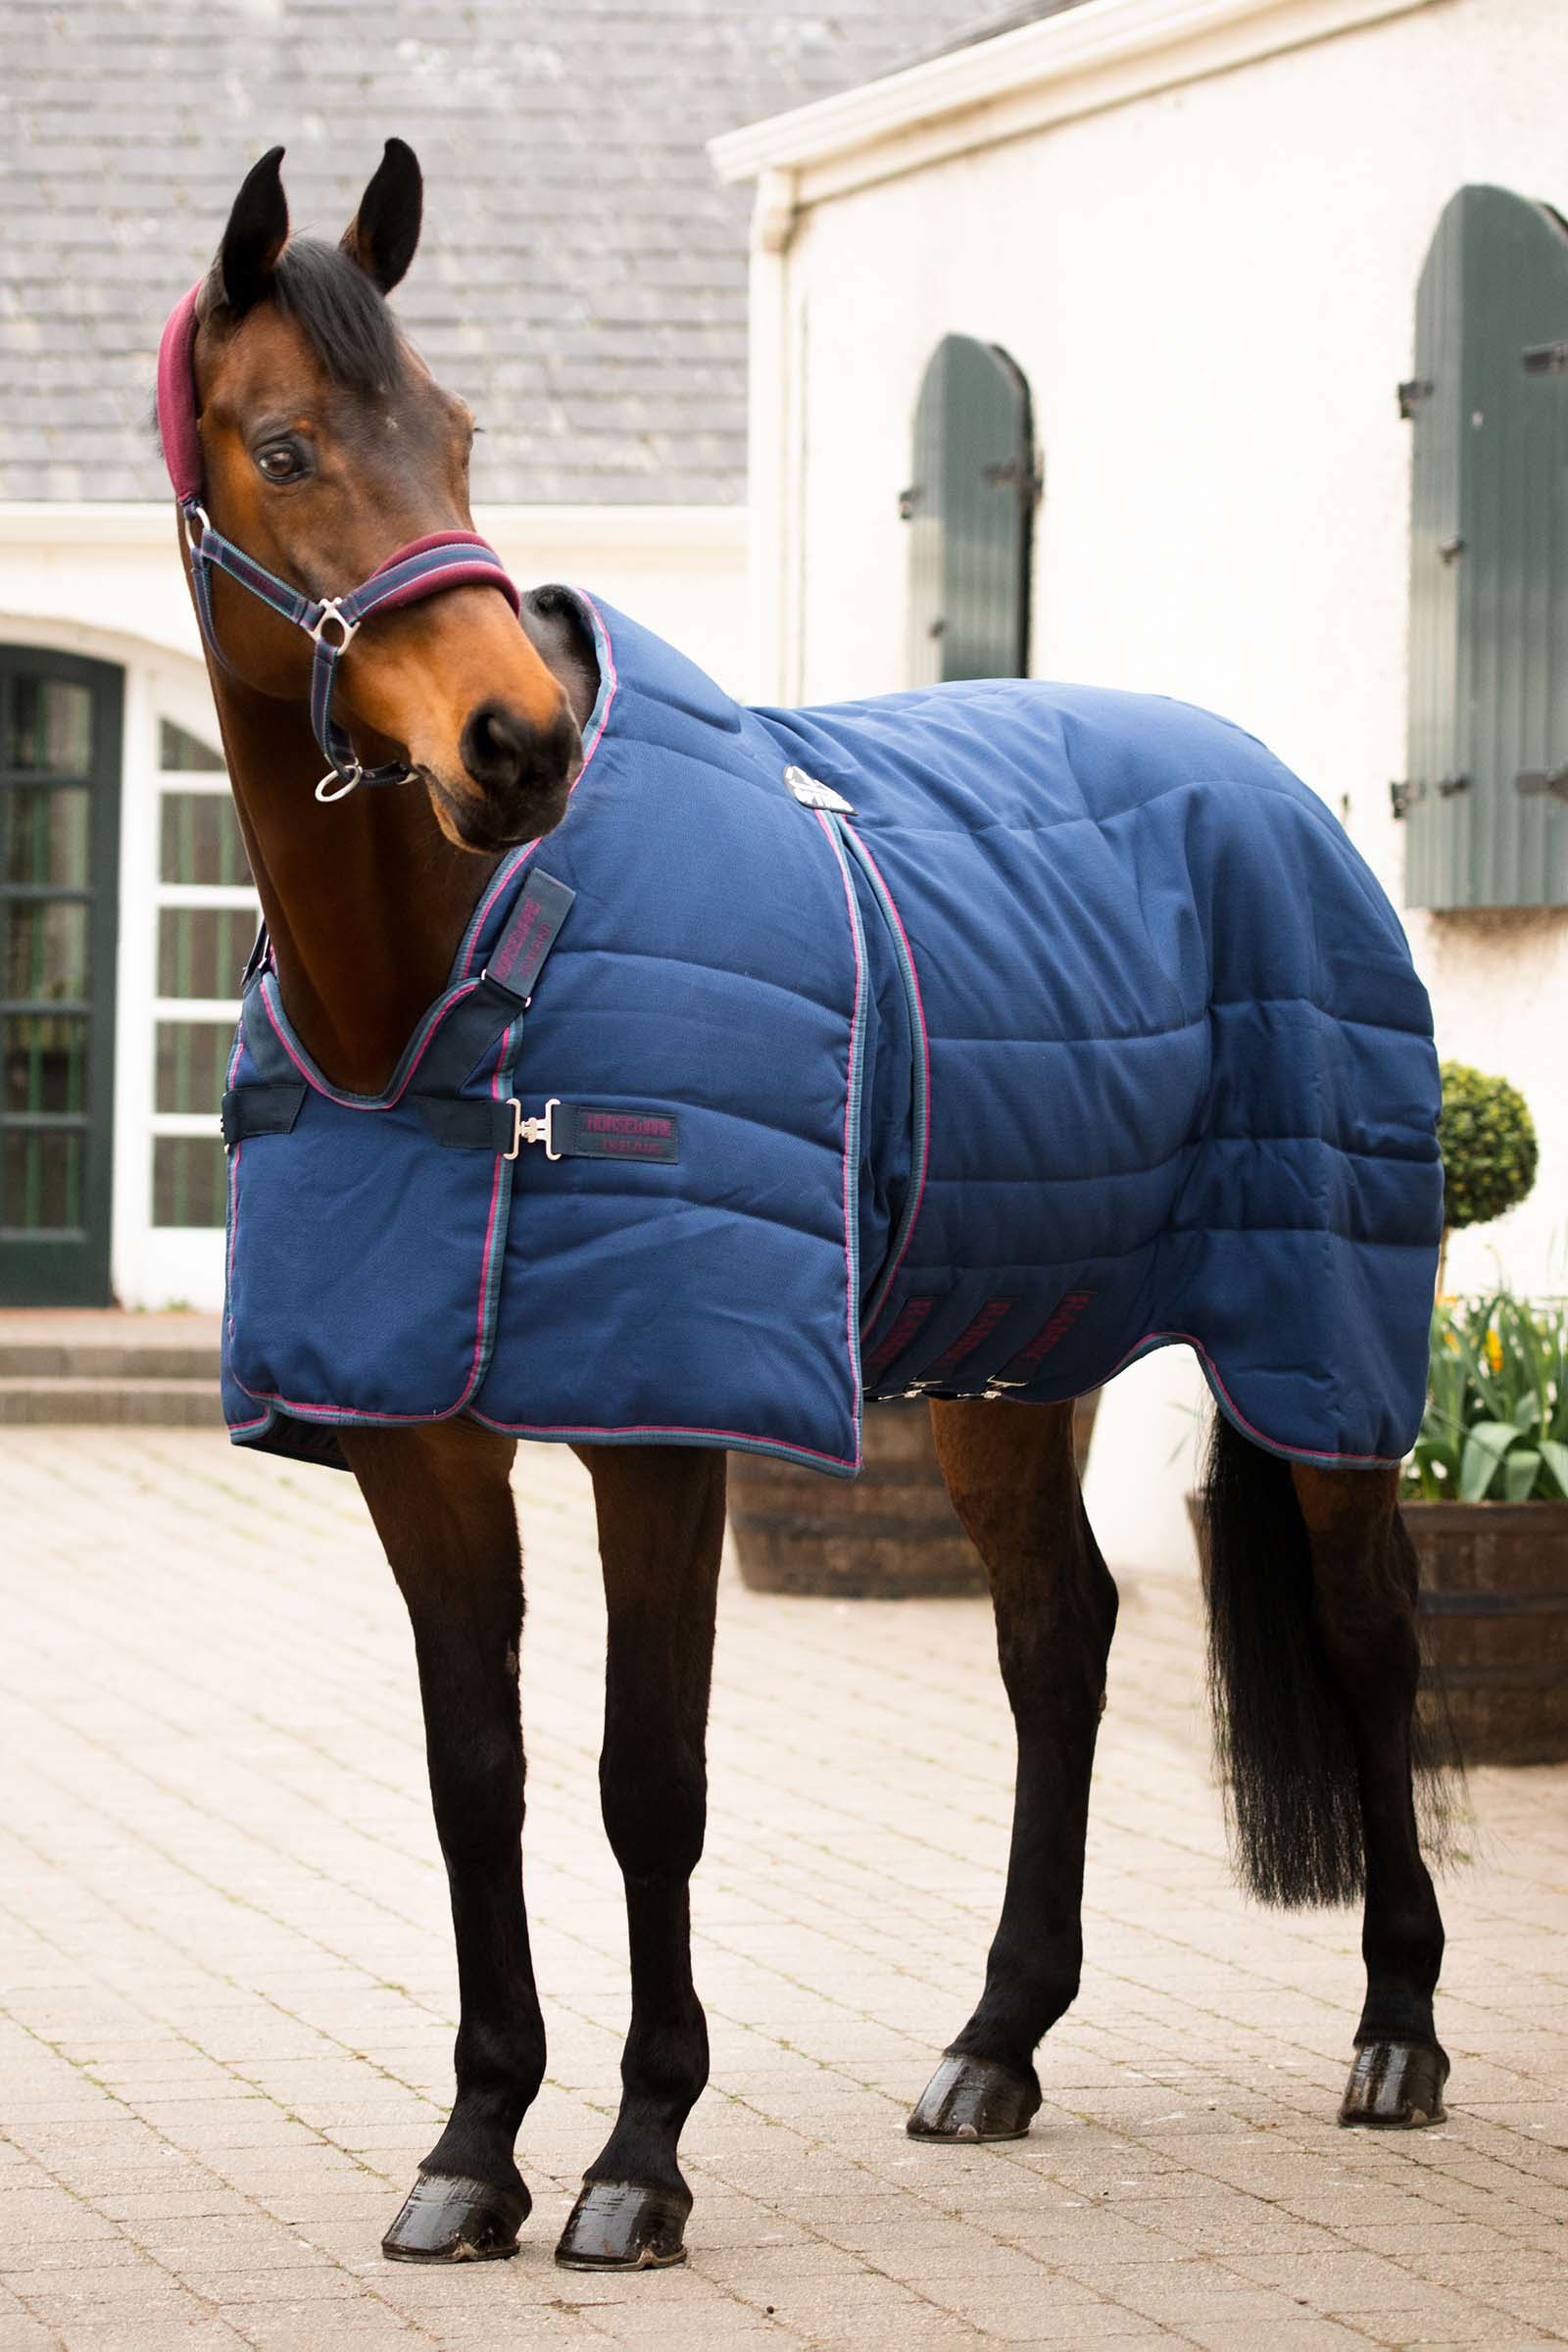 RugBe Zero 165 cm grey coperta da cavallo outdoor perfetta per tutto l'anno